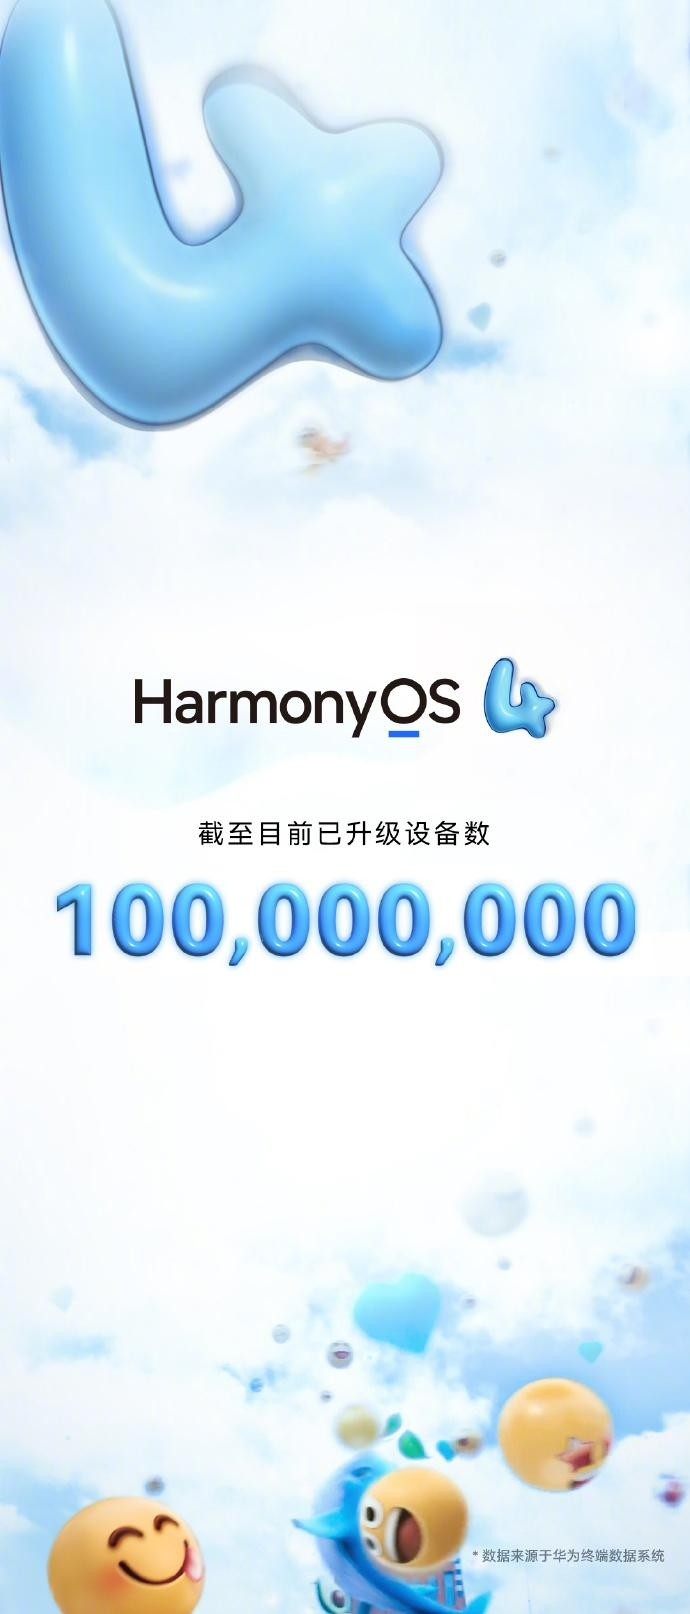 华为鸿蒙HarmonyOS 4升级设备数量突破1亿